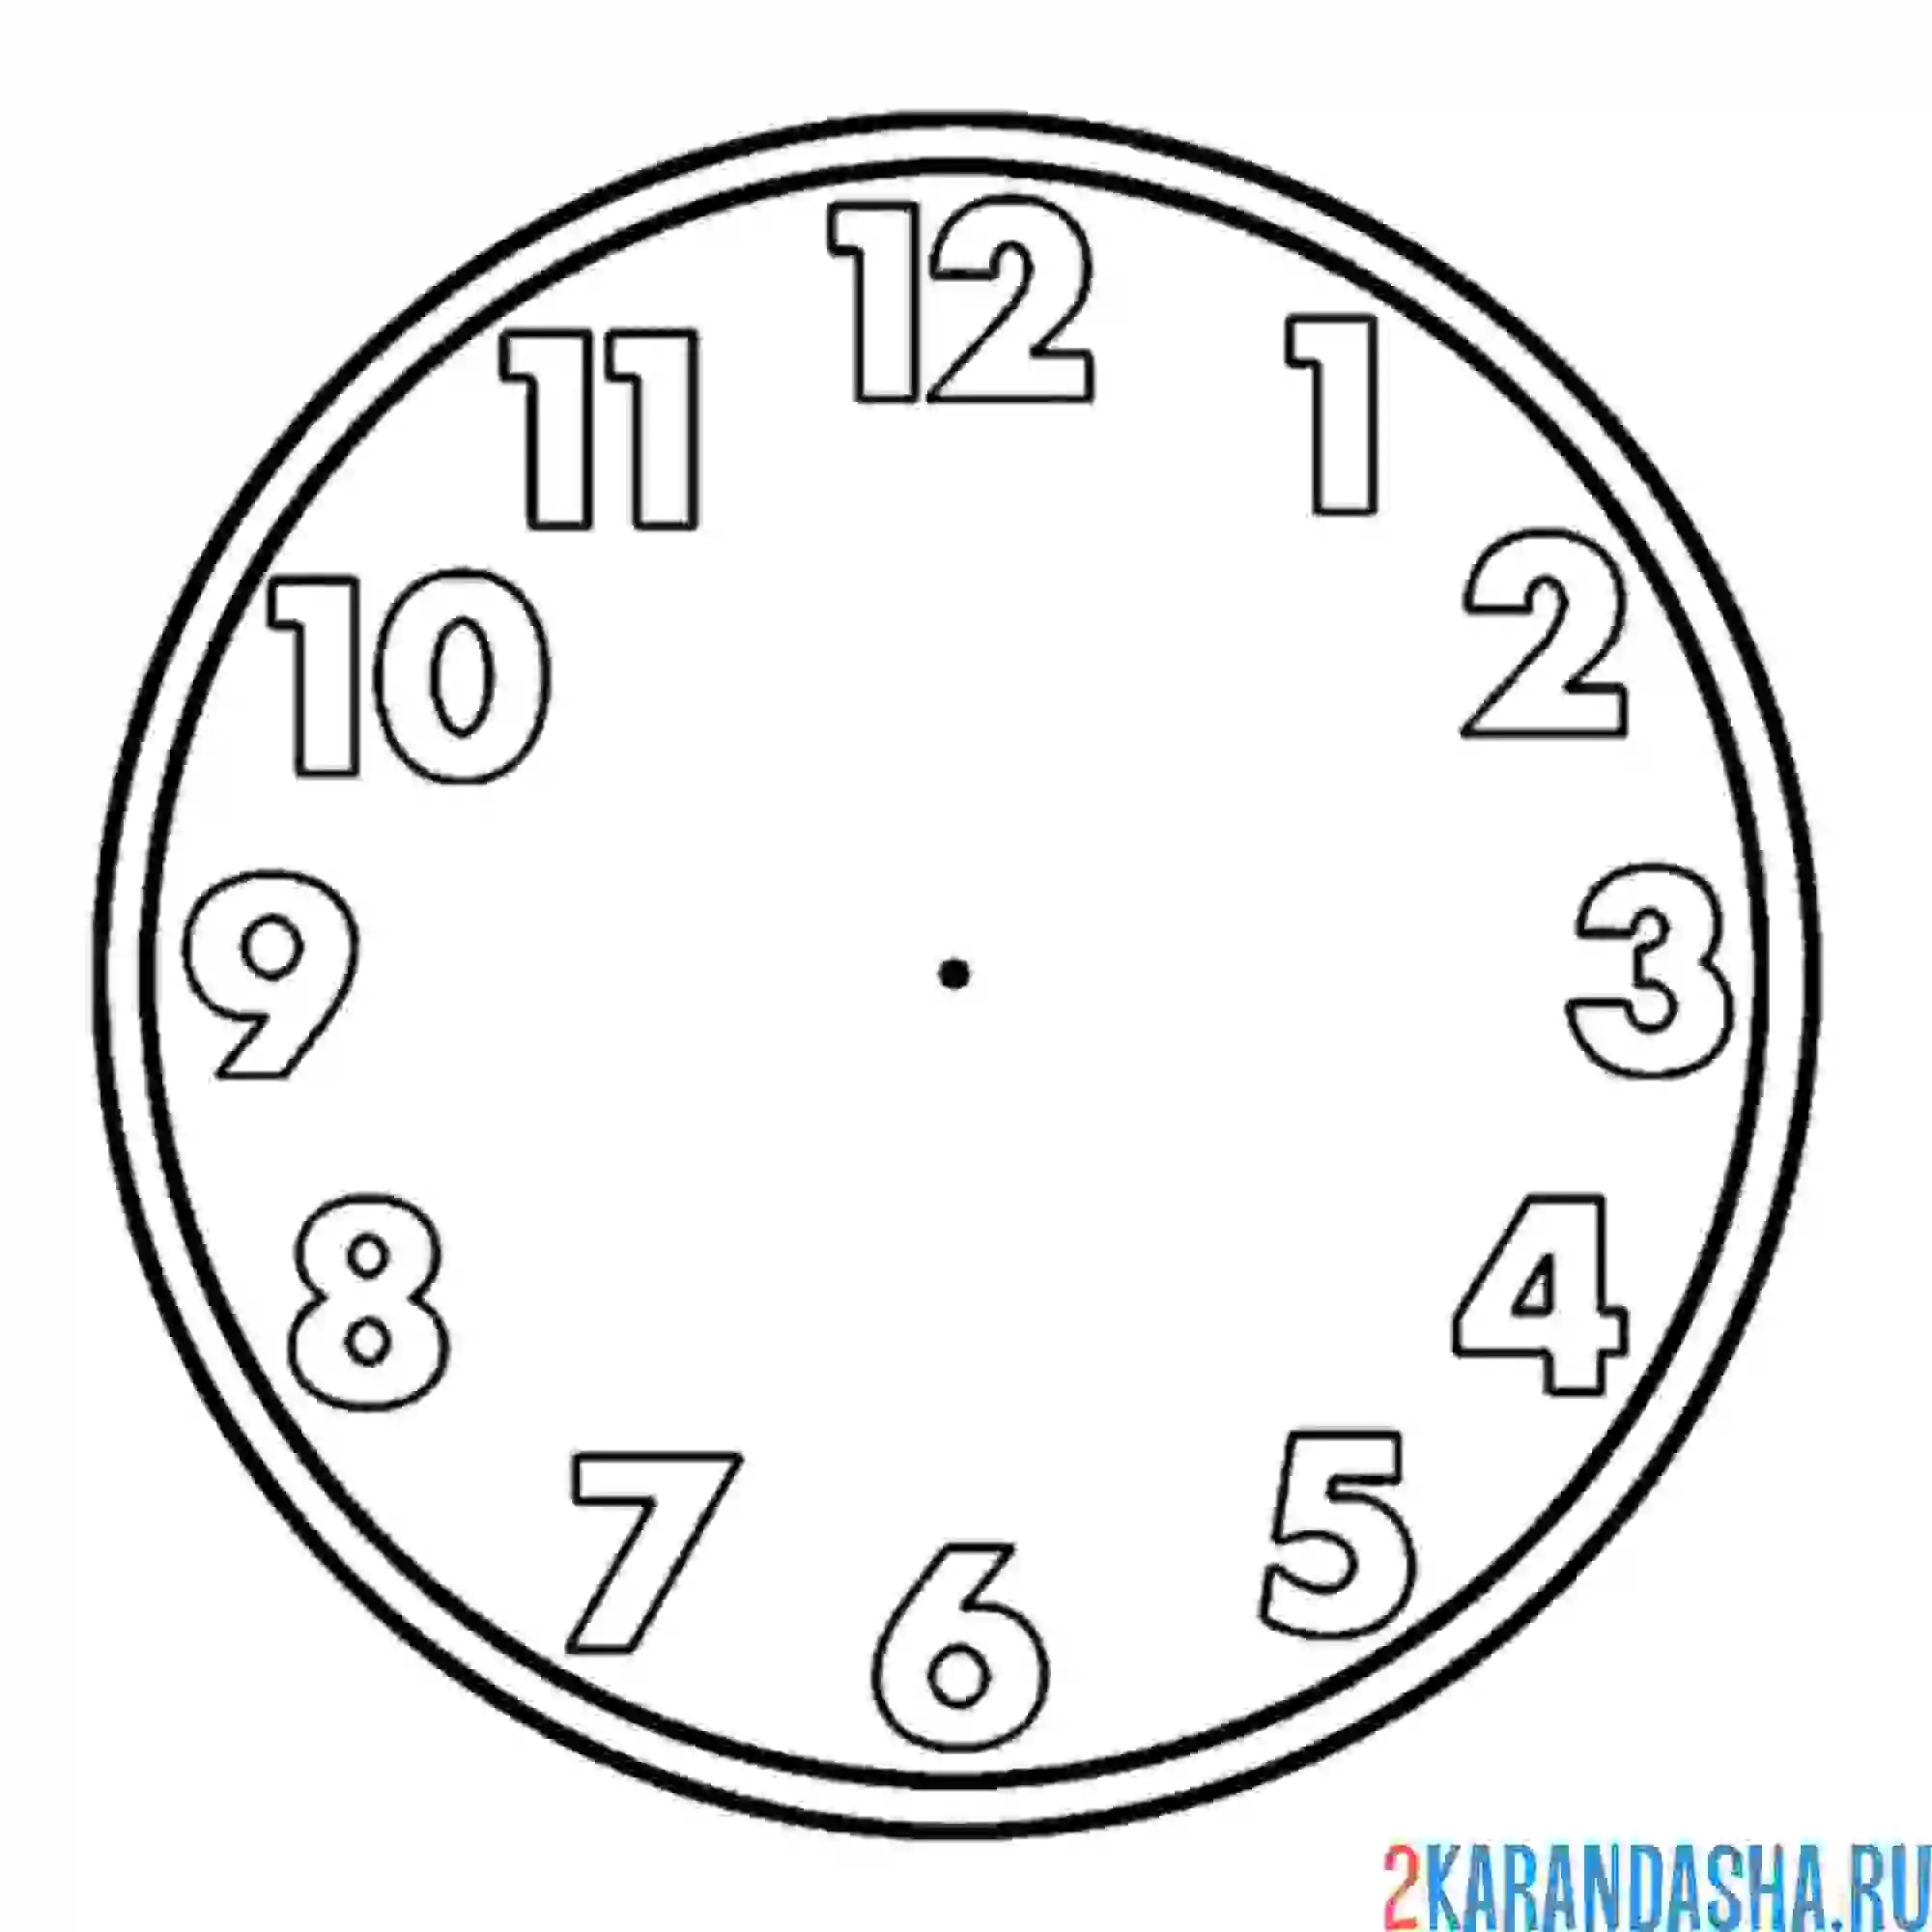 Время 14 57. Макет часов для детей. Часы раскраска. Макет часов для печати. Часы раскраска для детей.